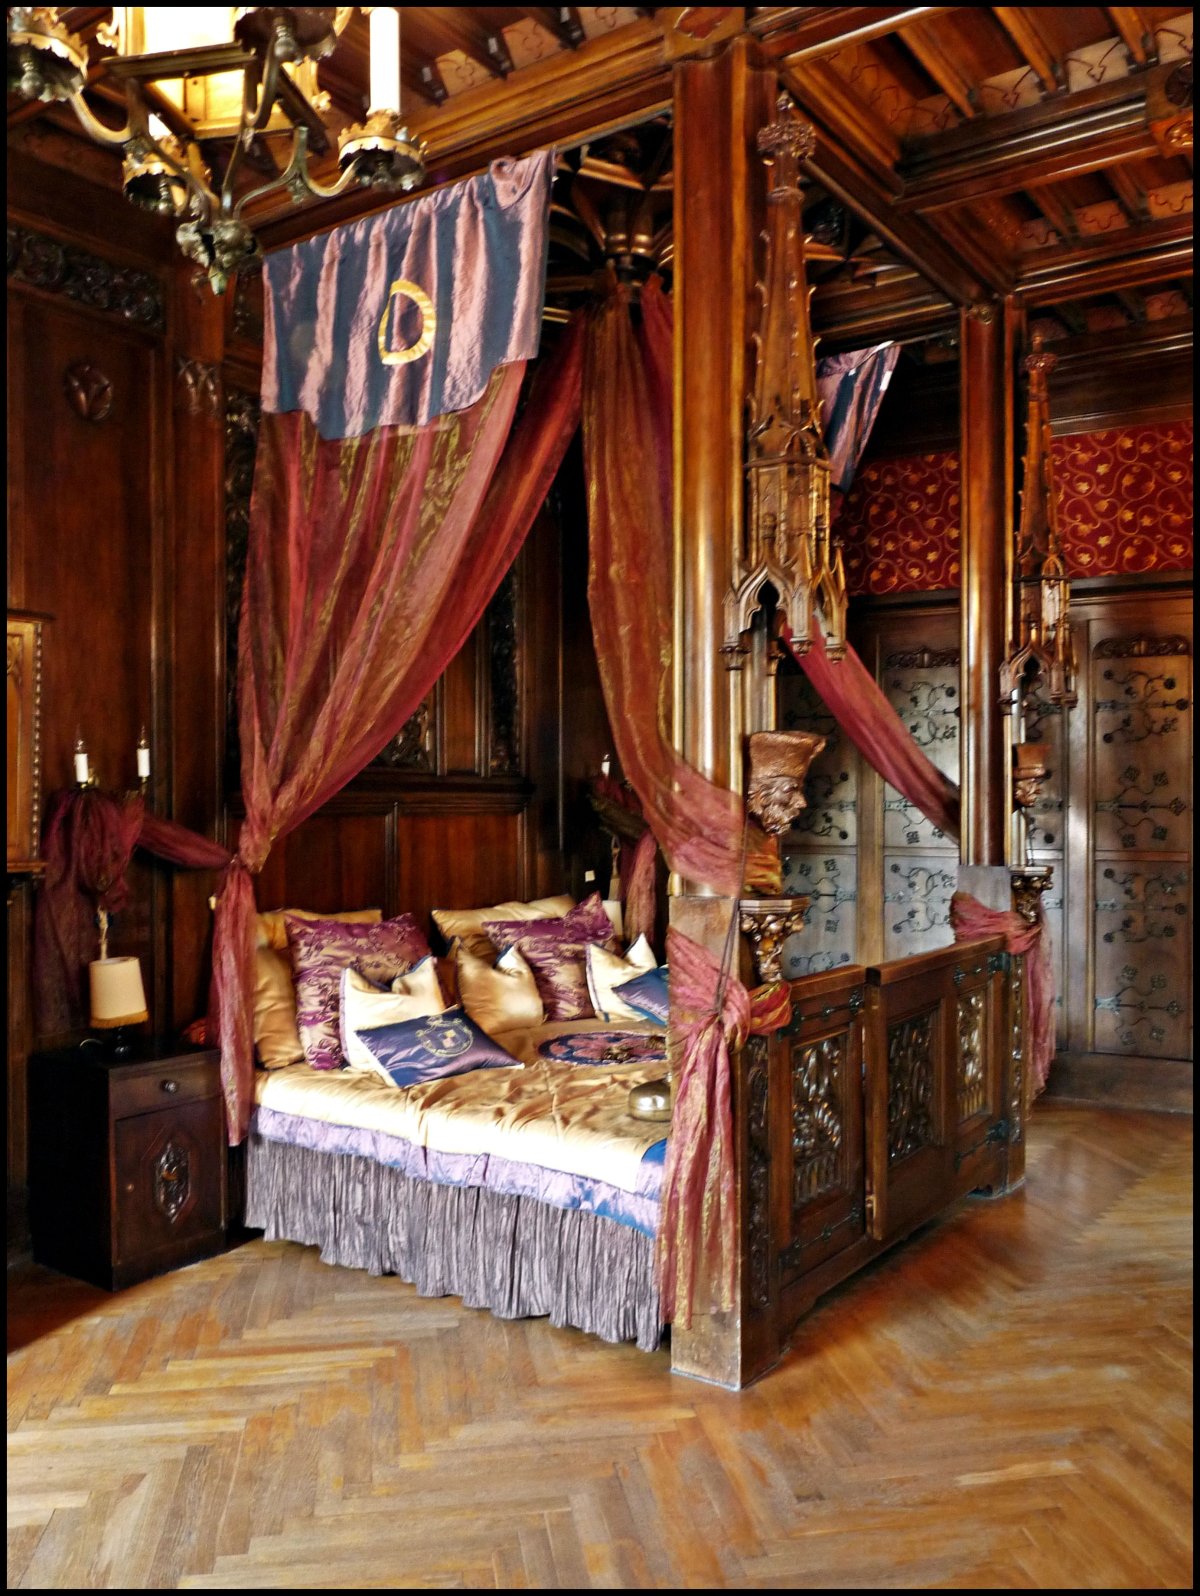 Комната в средневековом стиле